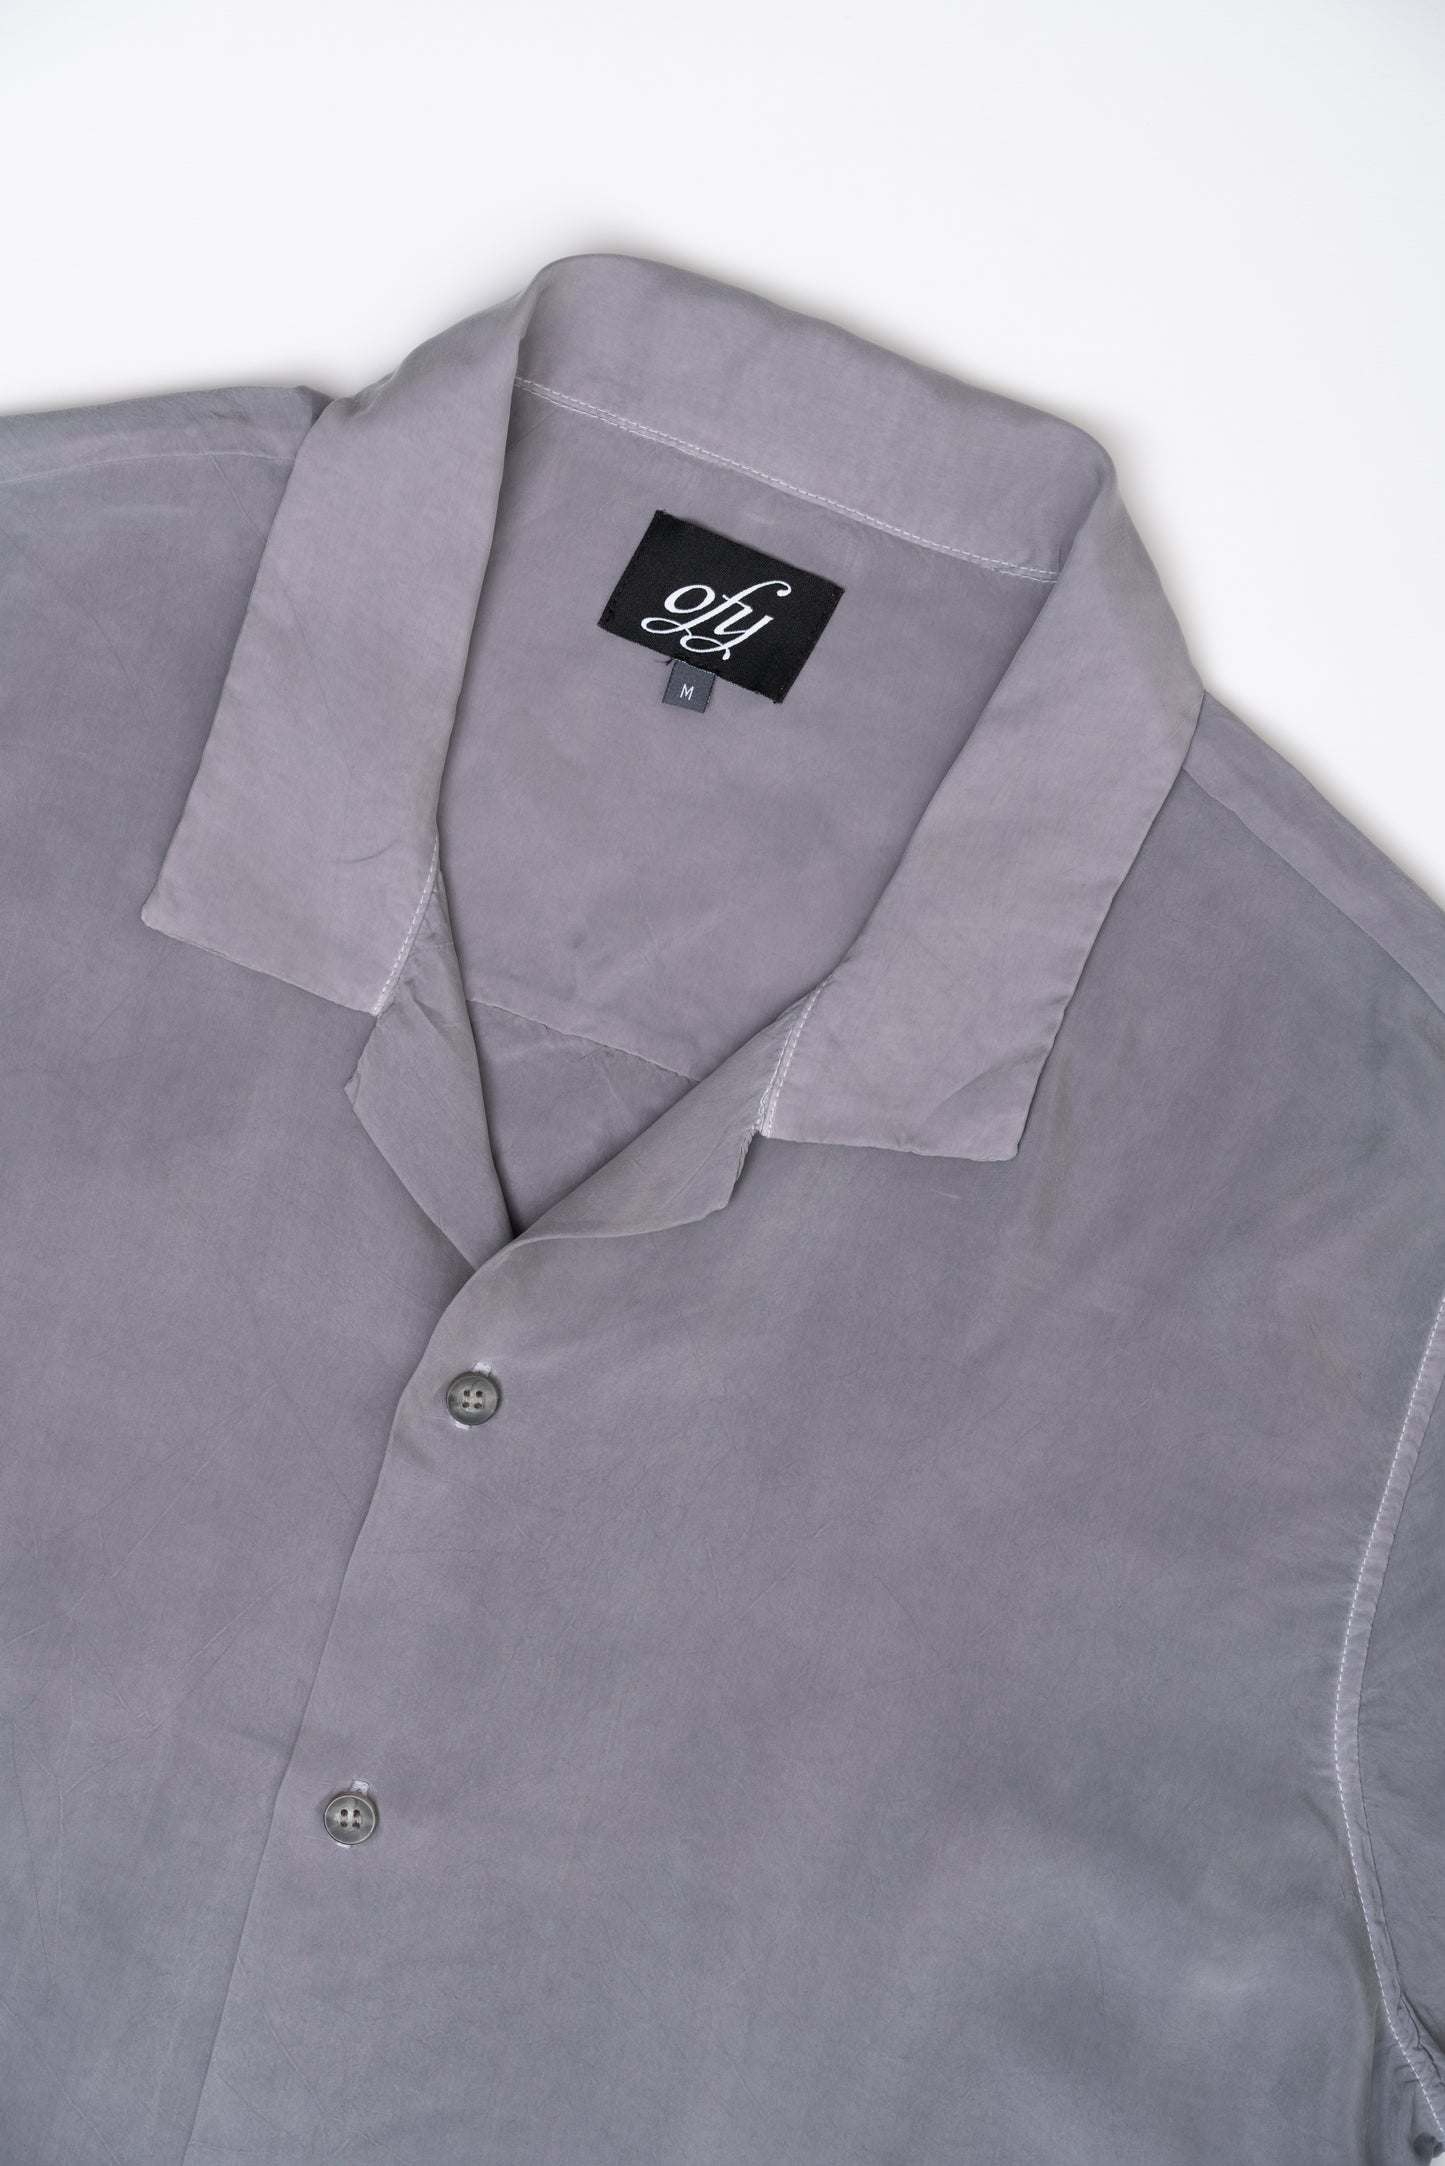 Iggy S/S Shirt - Chiseled Stone